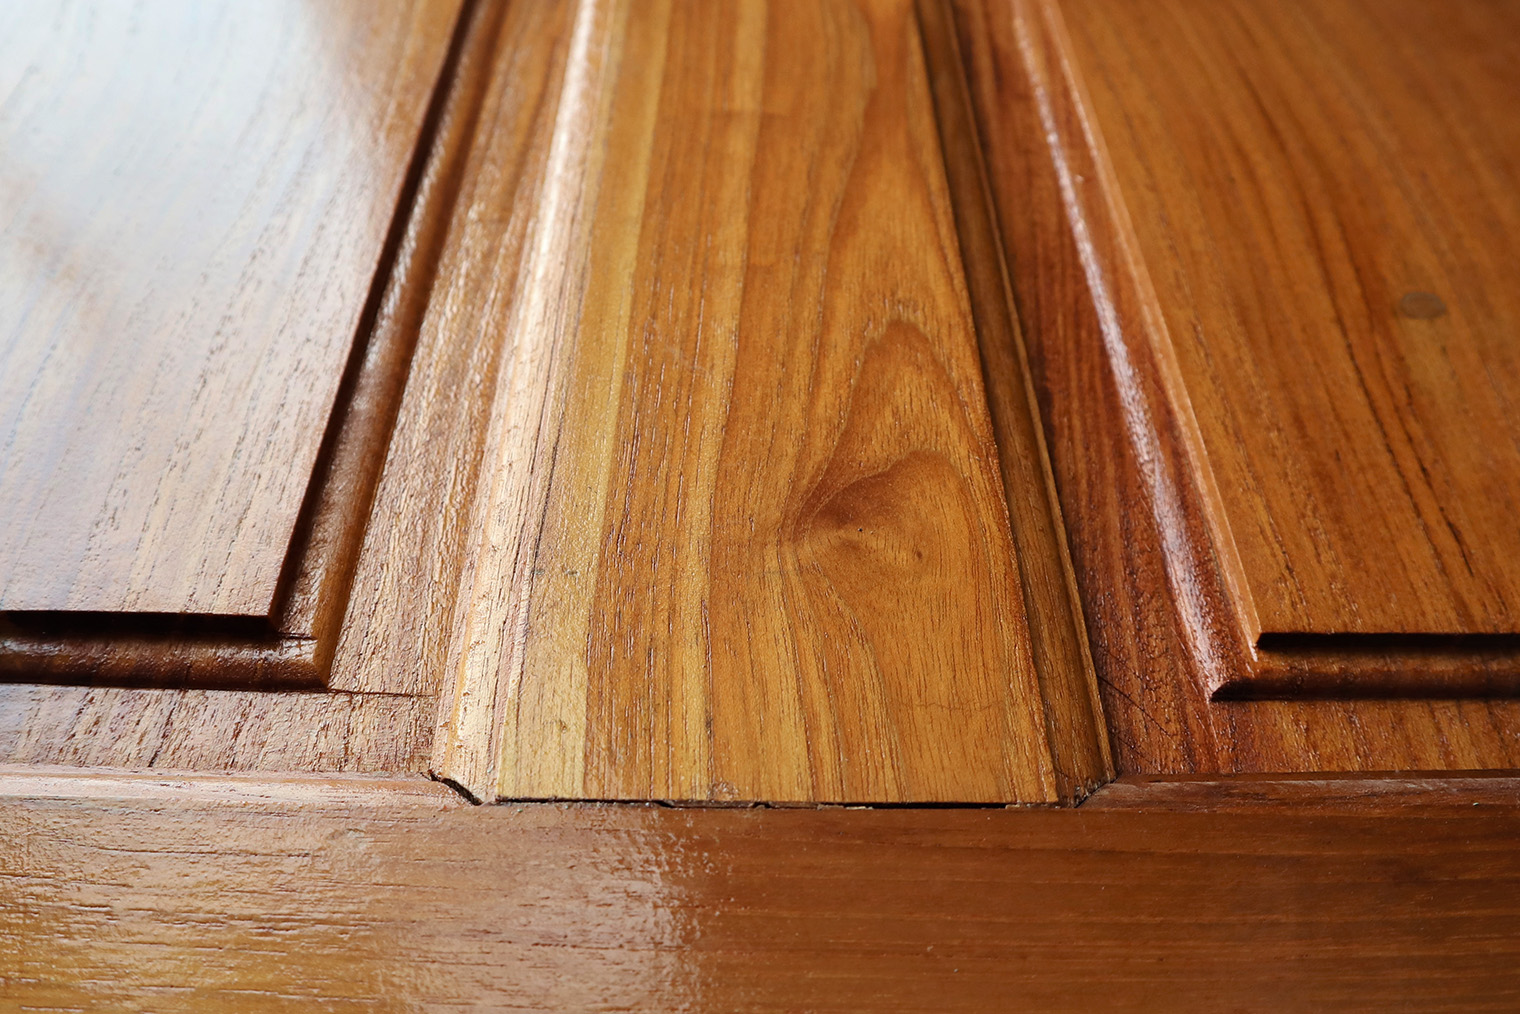 На цельном массиве видна естественная текстура древесины. Фотография: PIYAPACHZ / Shutterstock